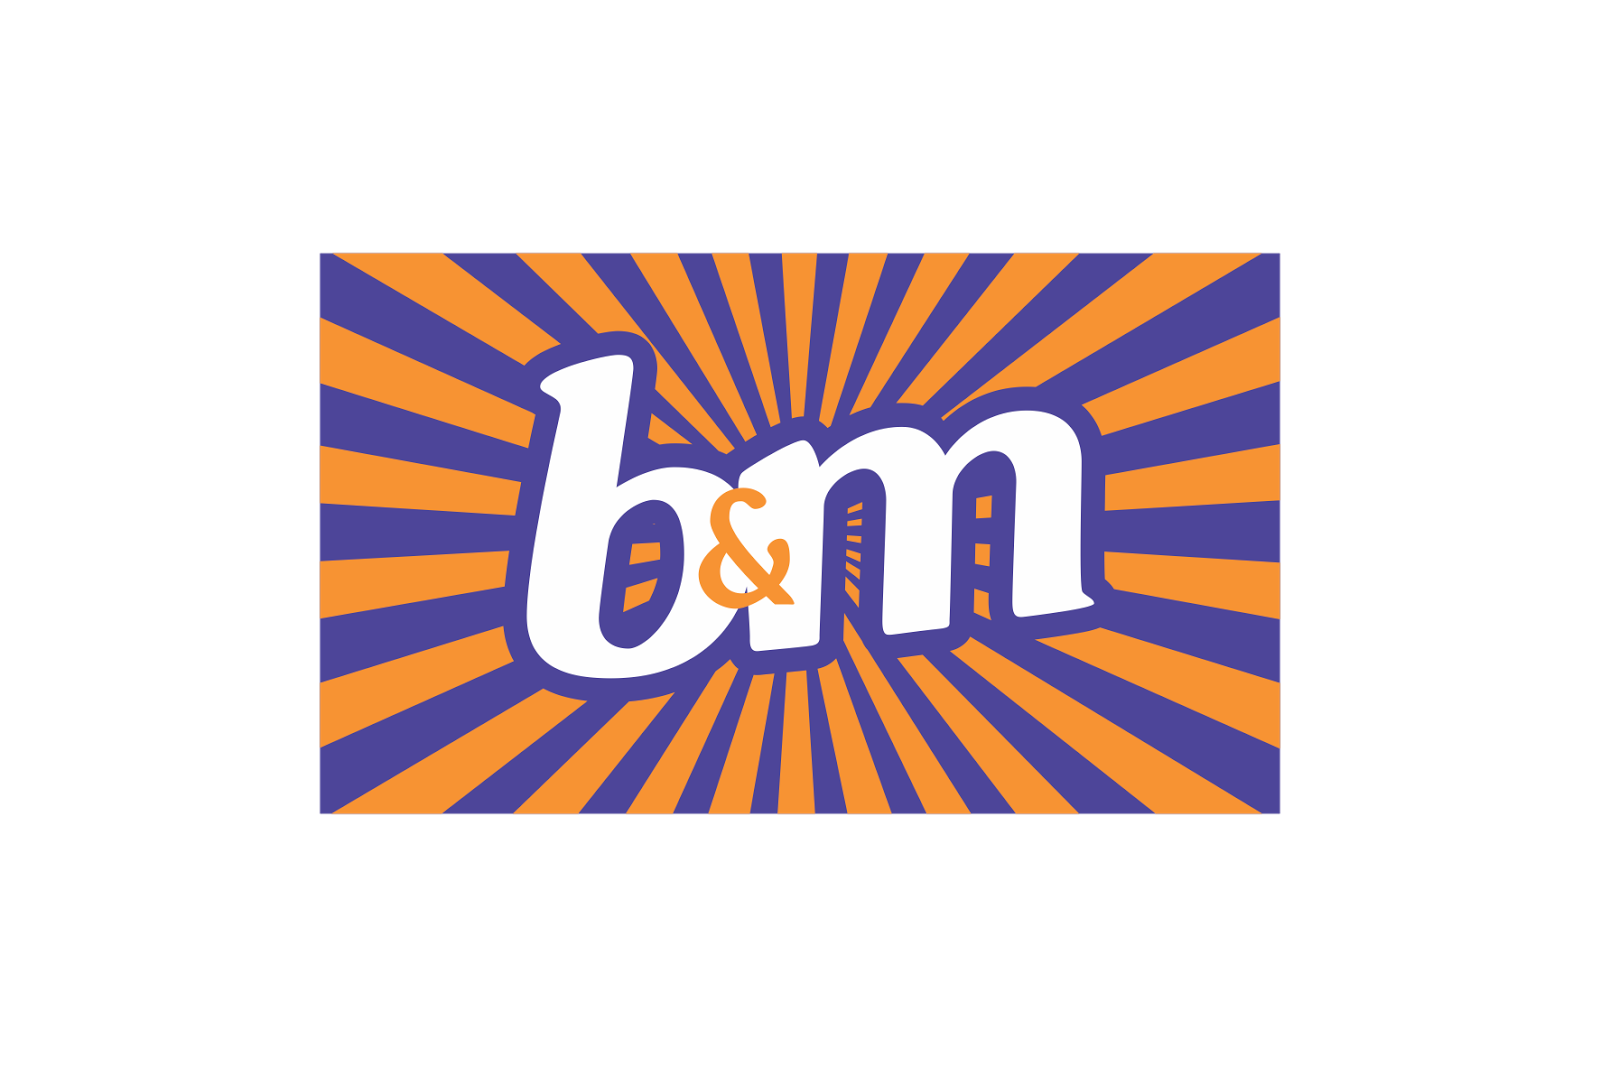 BM_Bargains logo